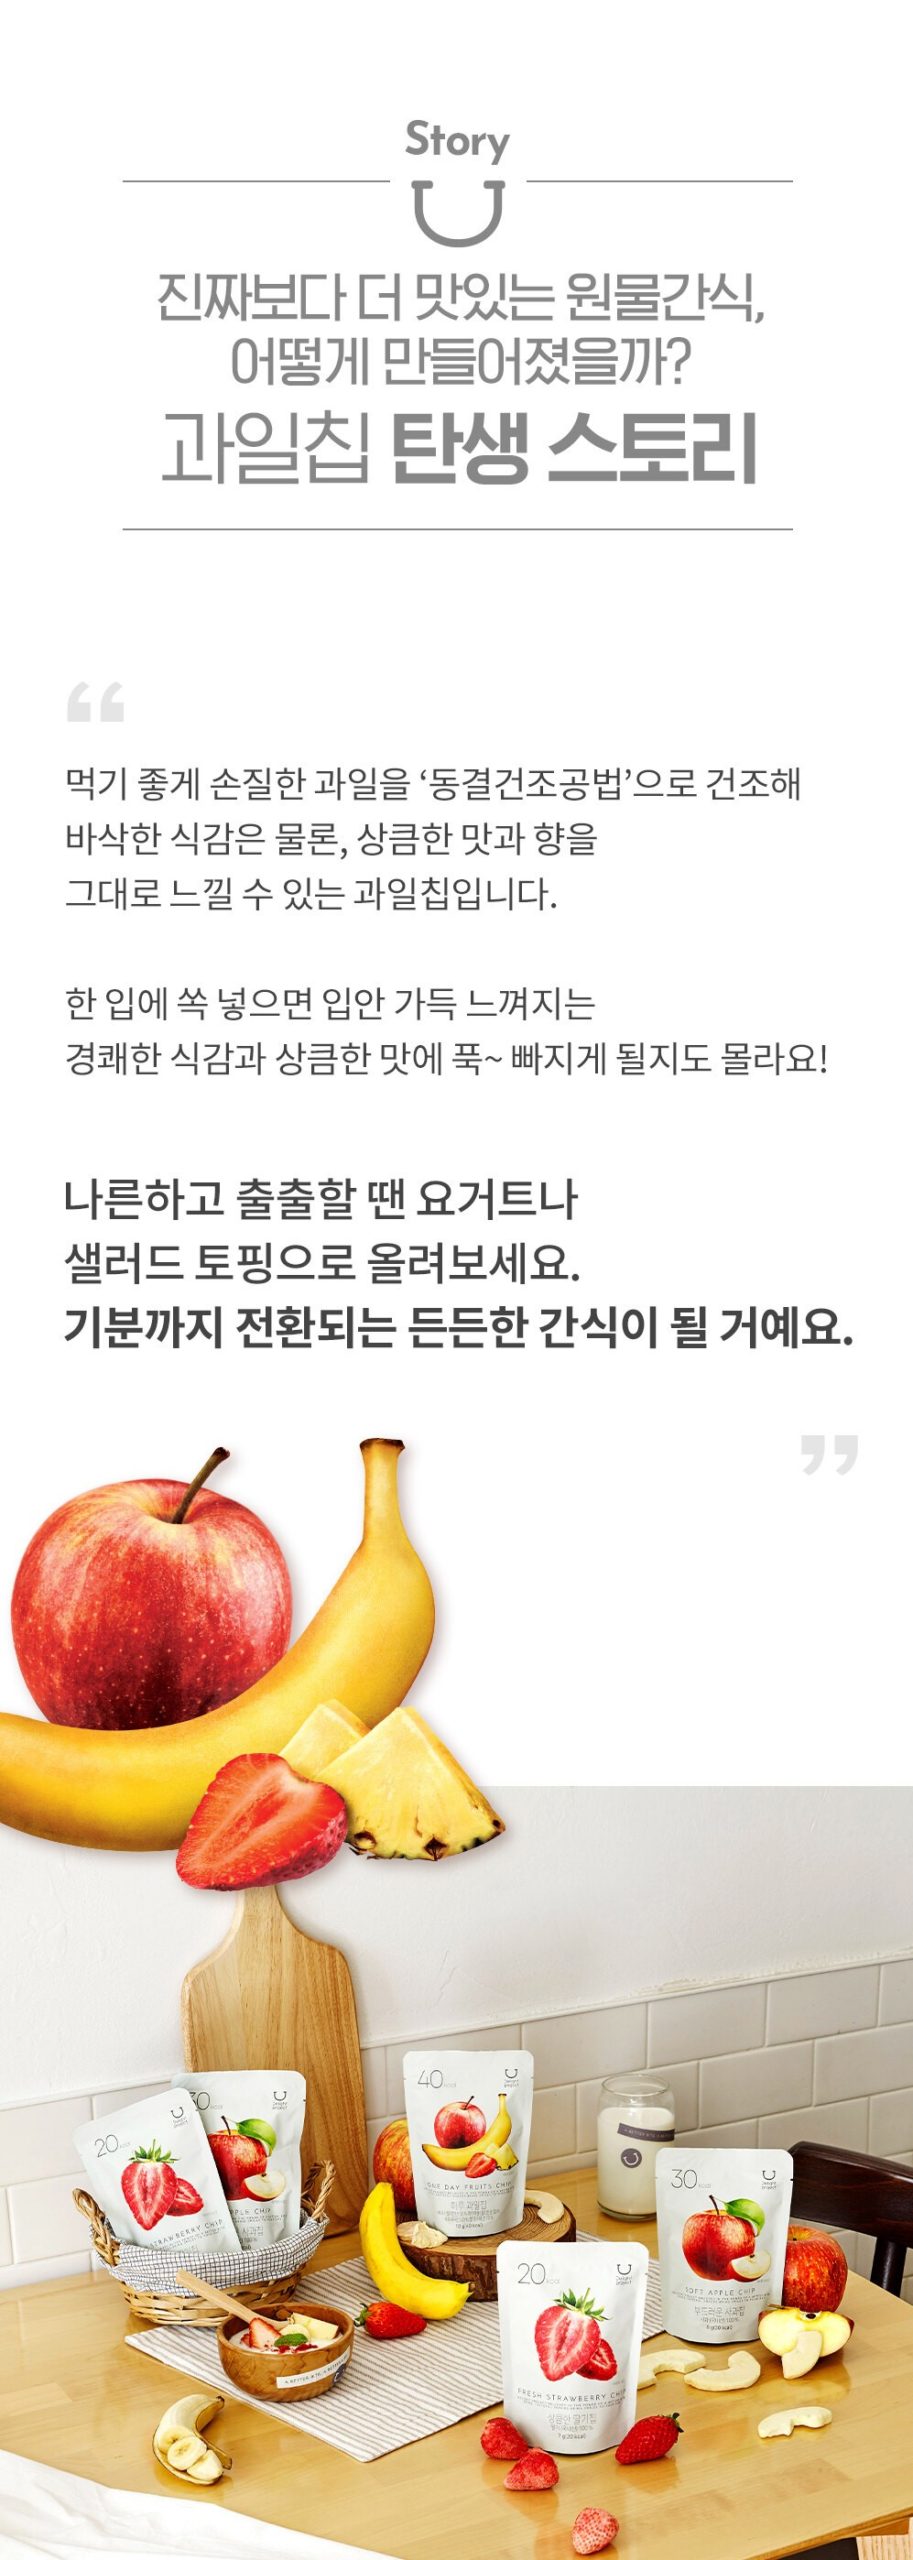 韓國食品-[Delight Project] Fresh Strawberry Chip 7g